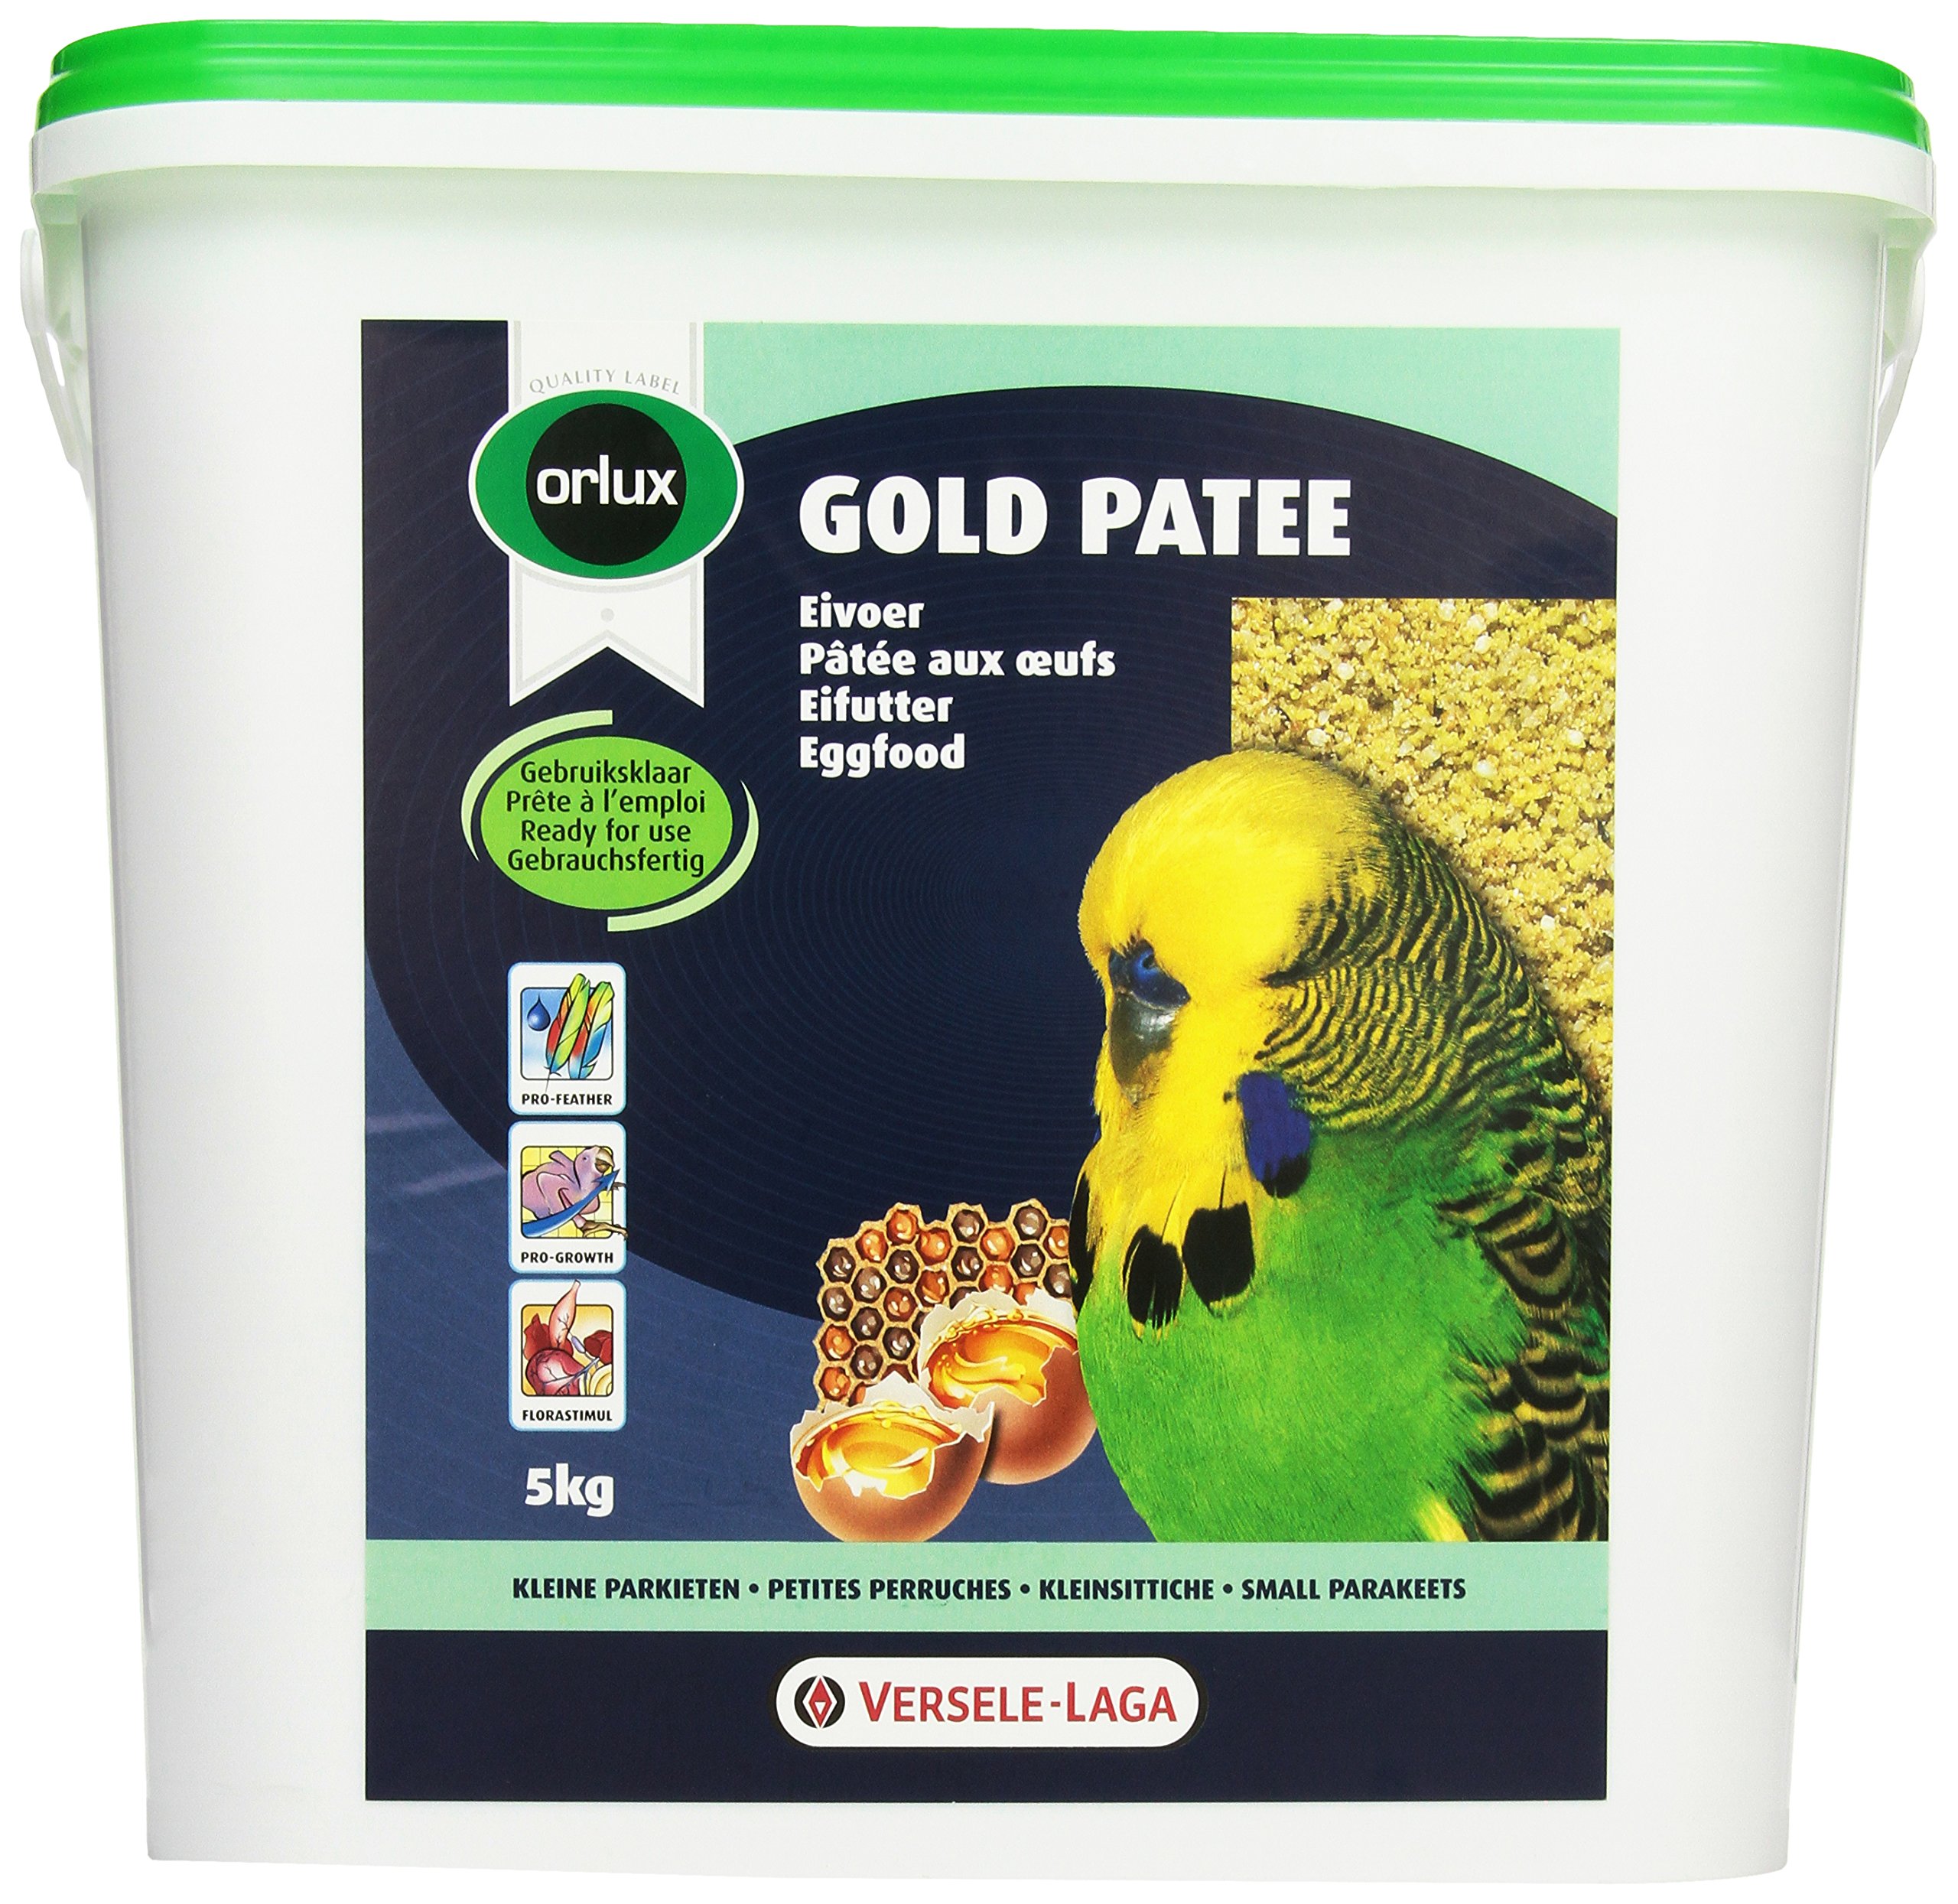 Orlux Gold patee Sittiche 5 kg